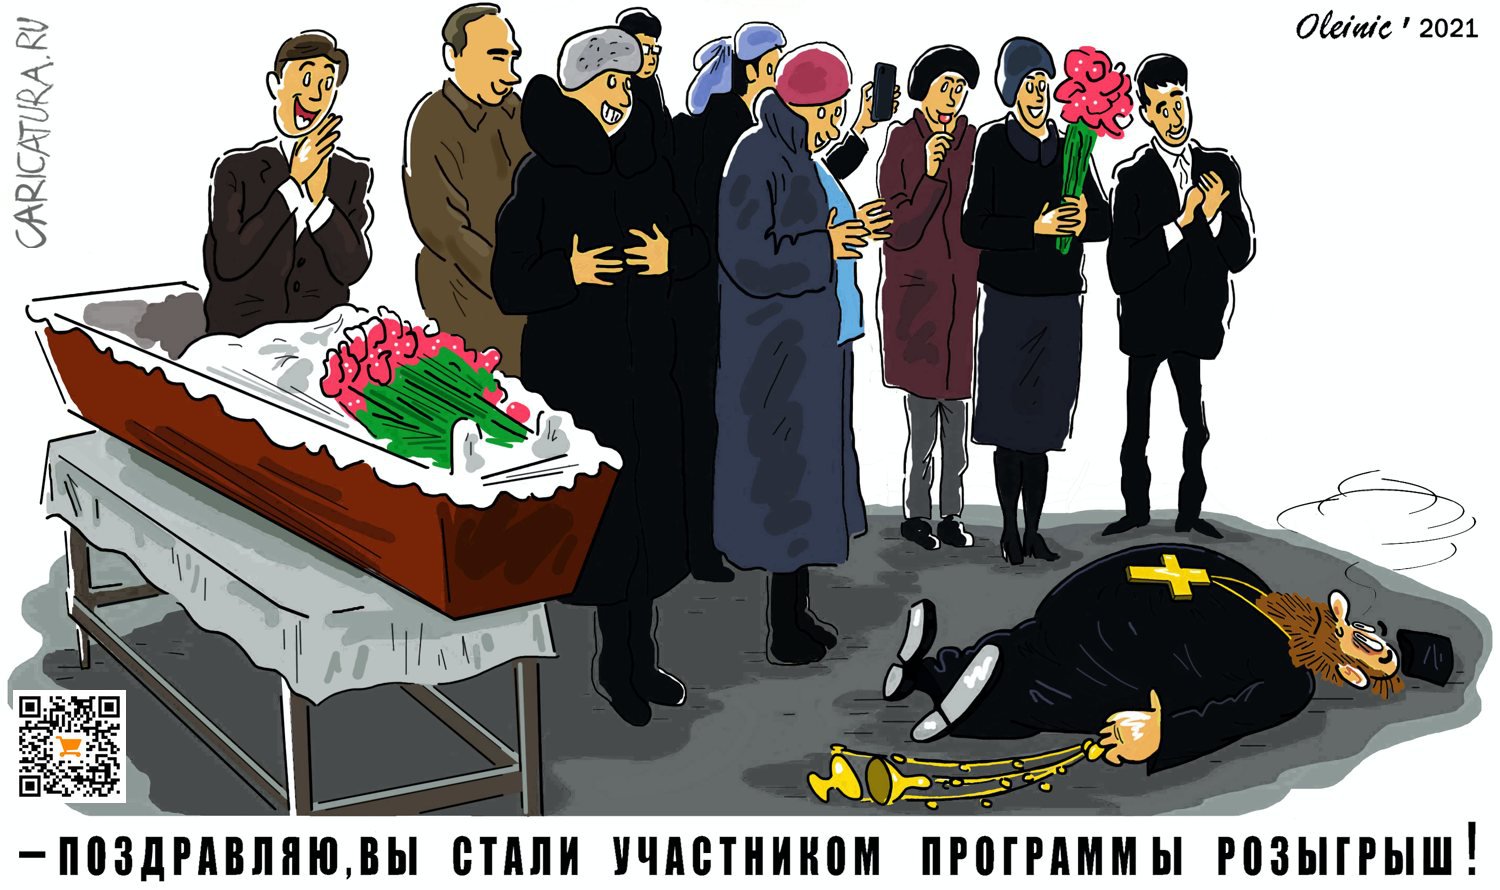 Карикатура "Розыгрыш", Алексей Олейник